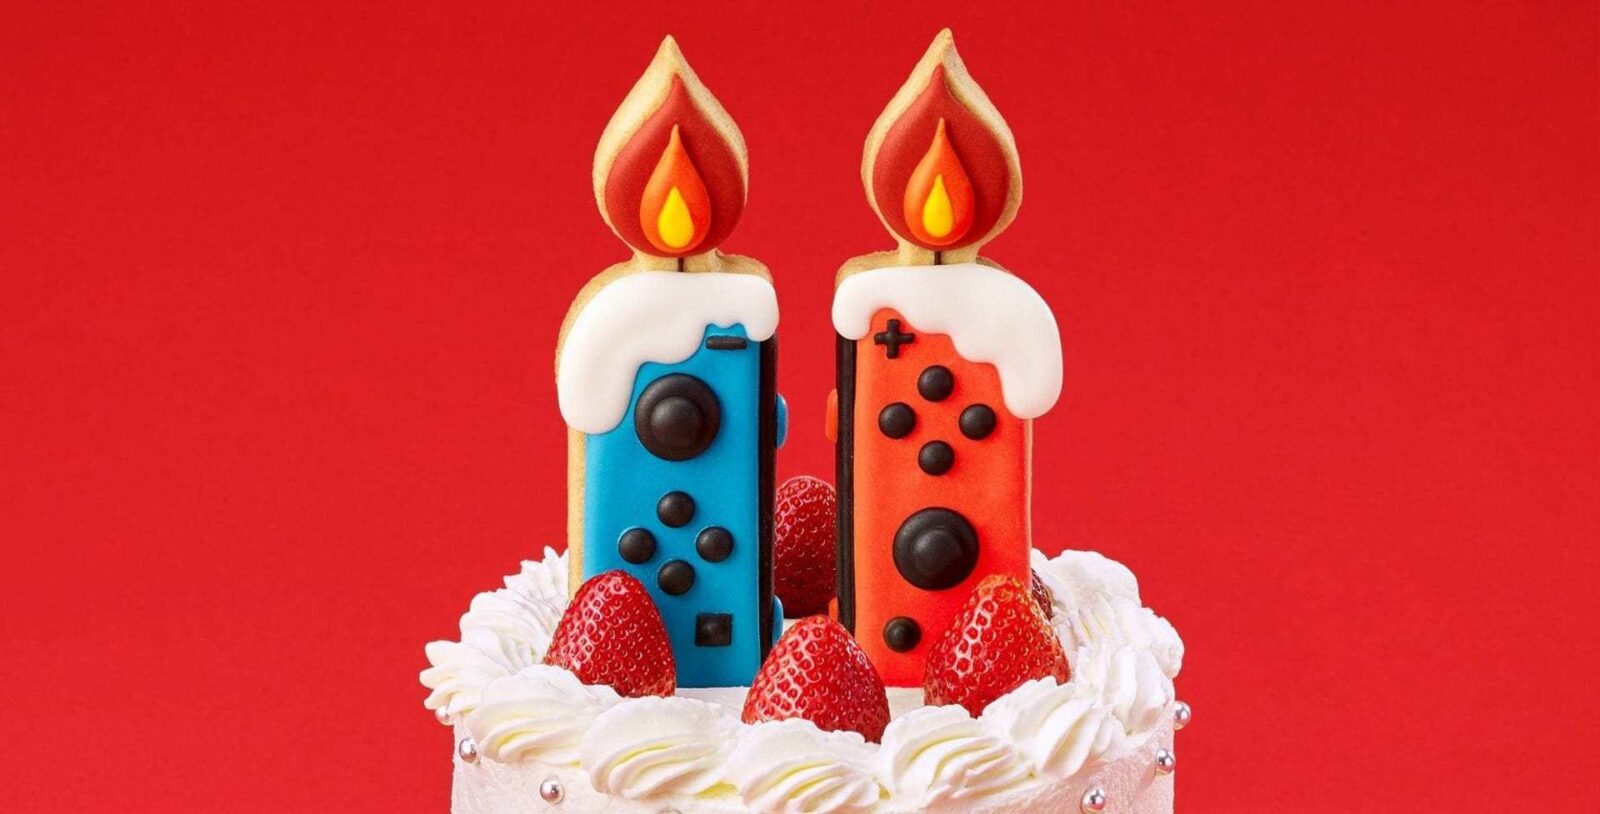 Nintendo Switch 4 anos: Linha do Tempo